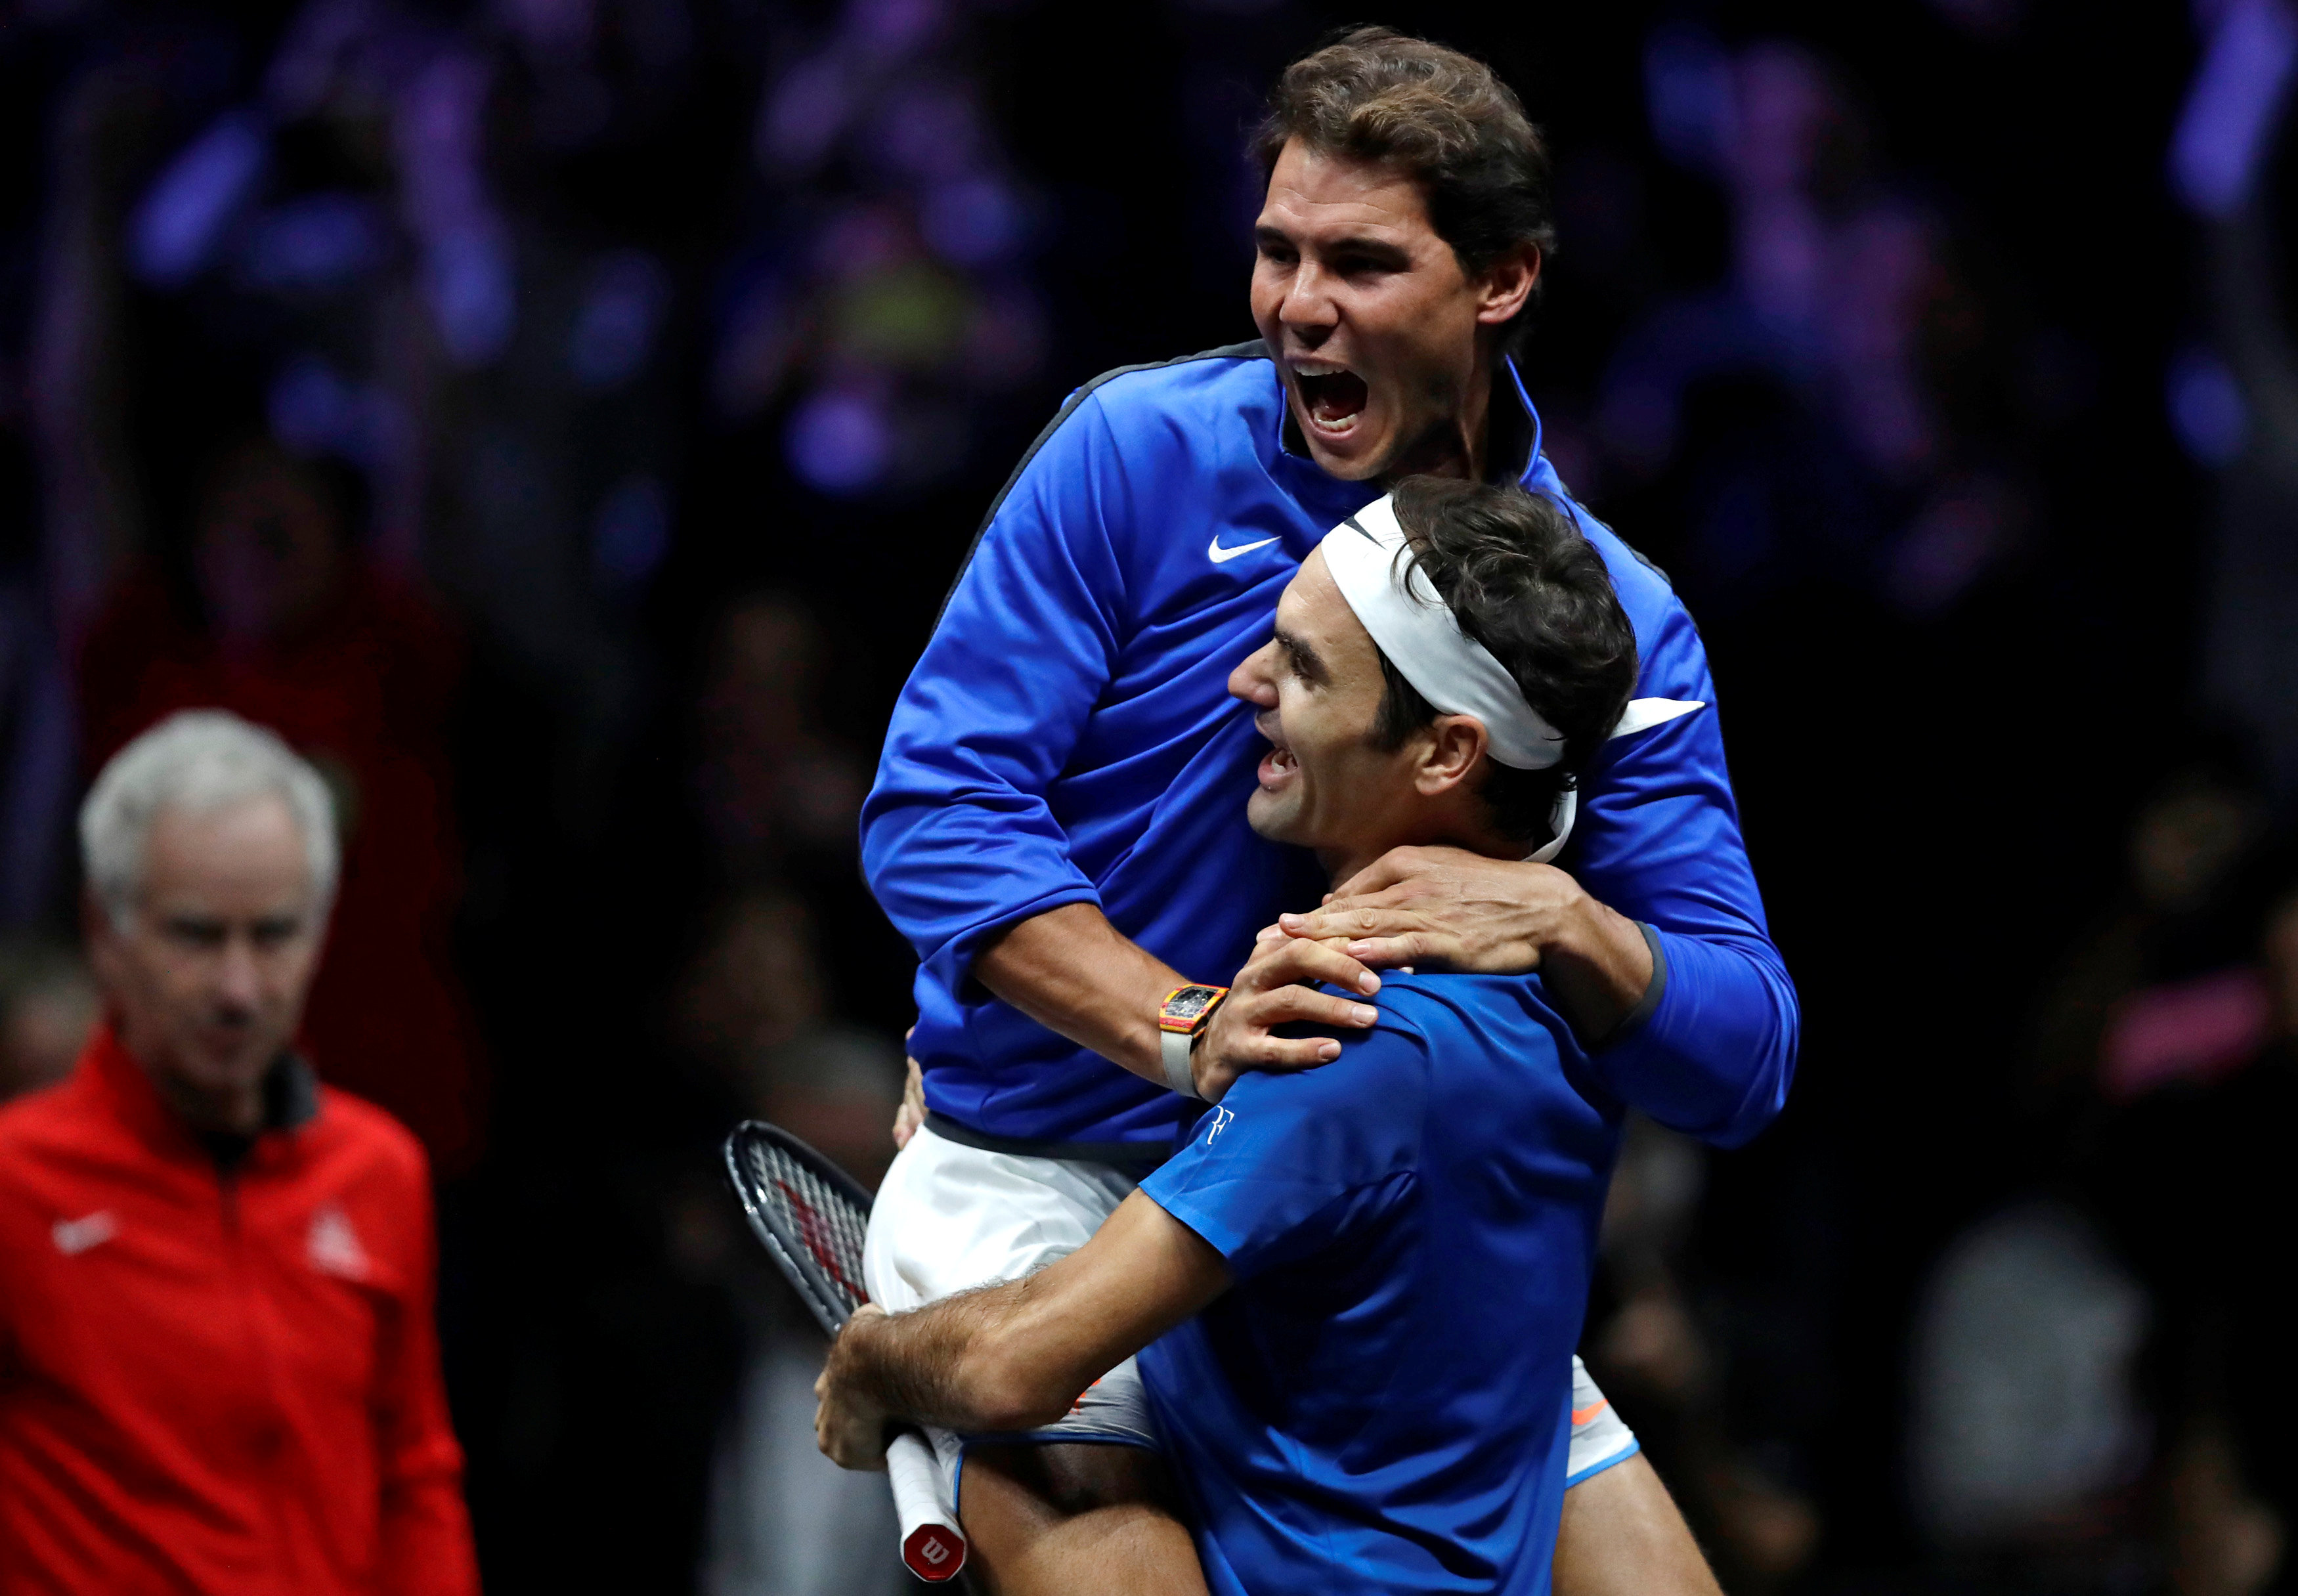 Nadal ôm Federer ăn mừng sau khi tay vợt người Thụy Sỹ đánh bại Nick Kyrgios. Ảnh: REUTERS